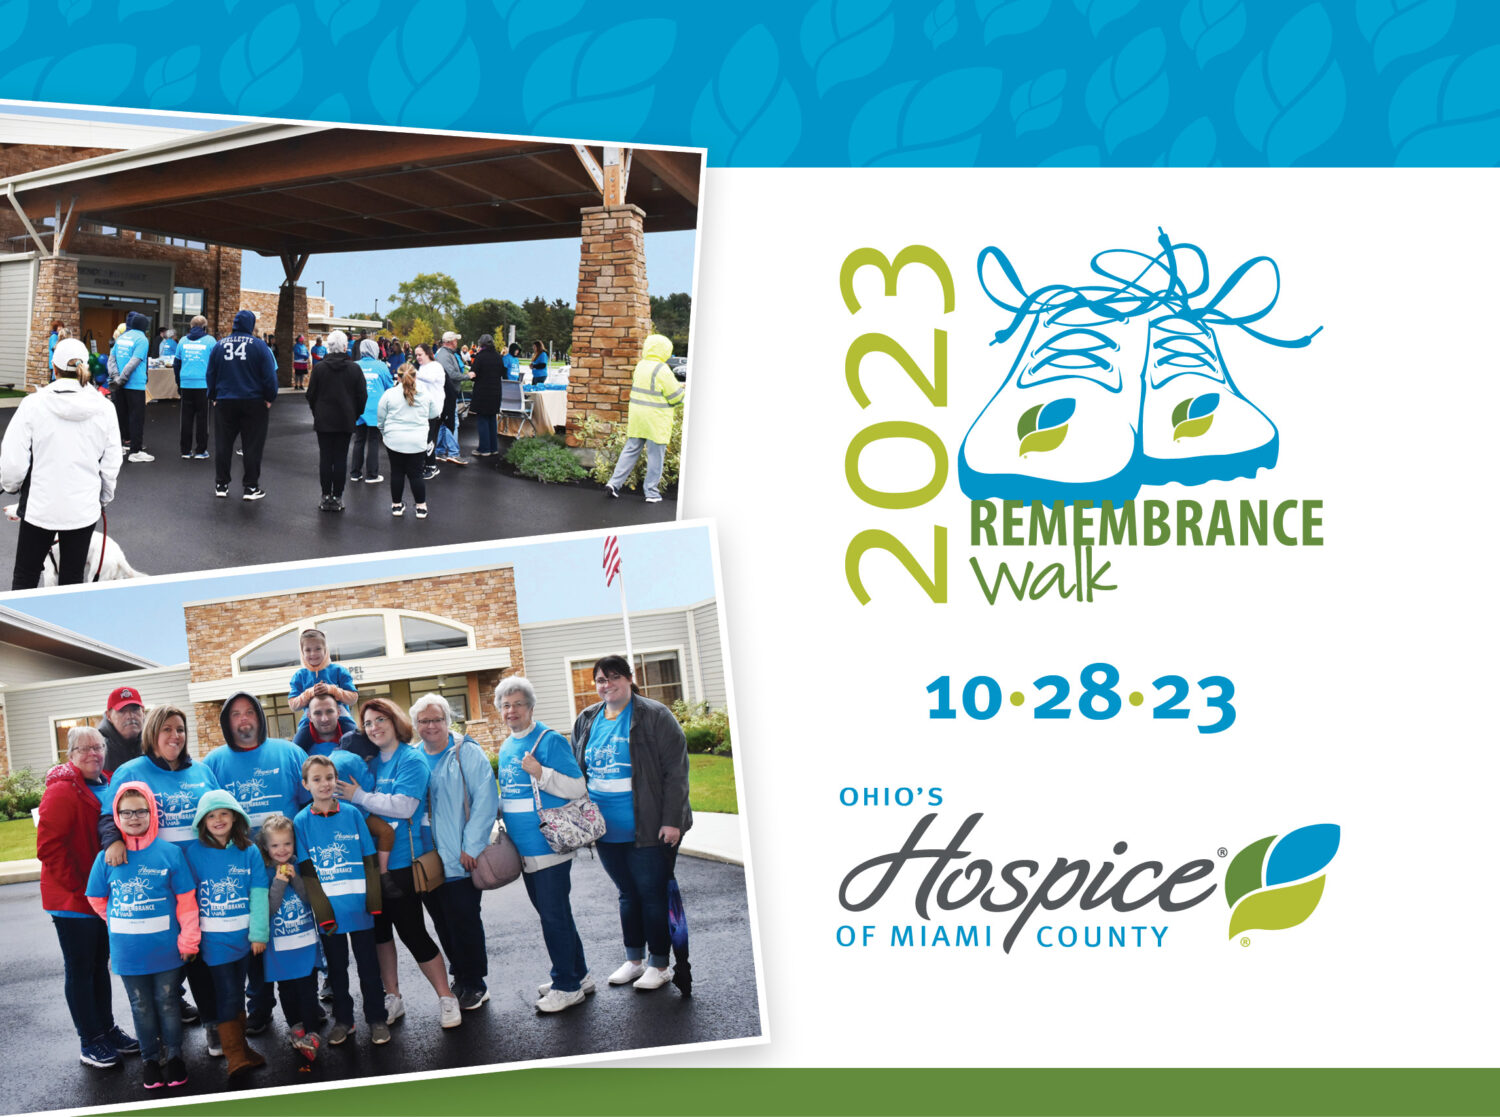 Ohio's Hospice of Miami County 2023 Remembrance Walk 10.28.23